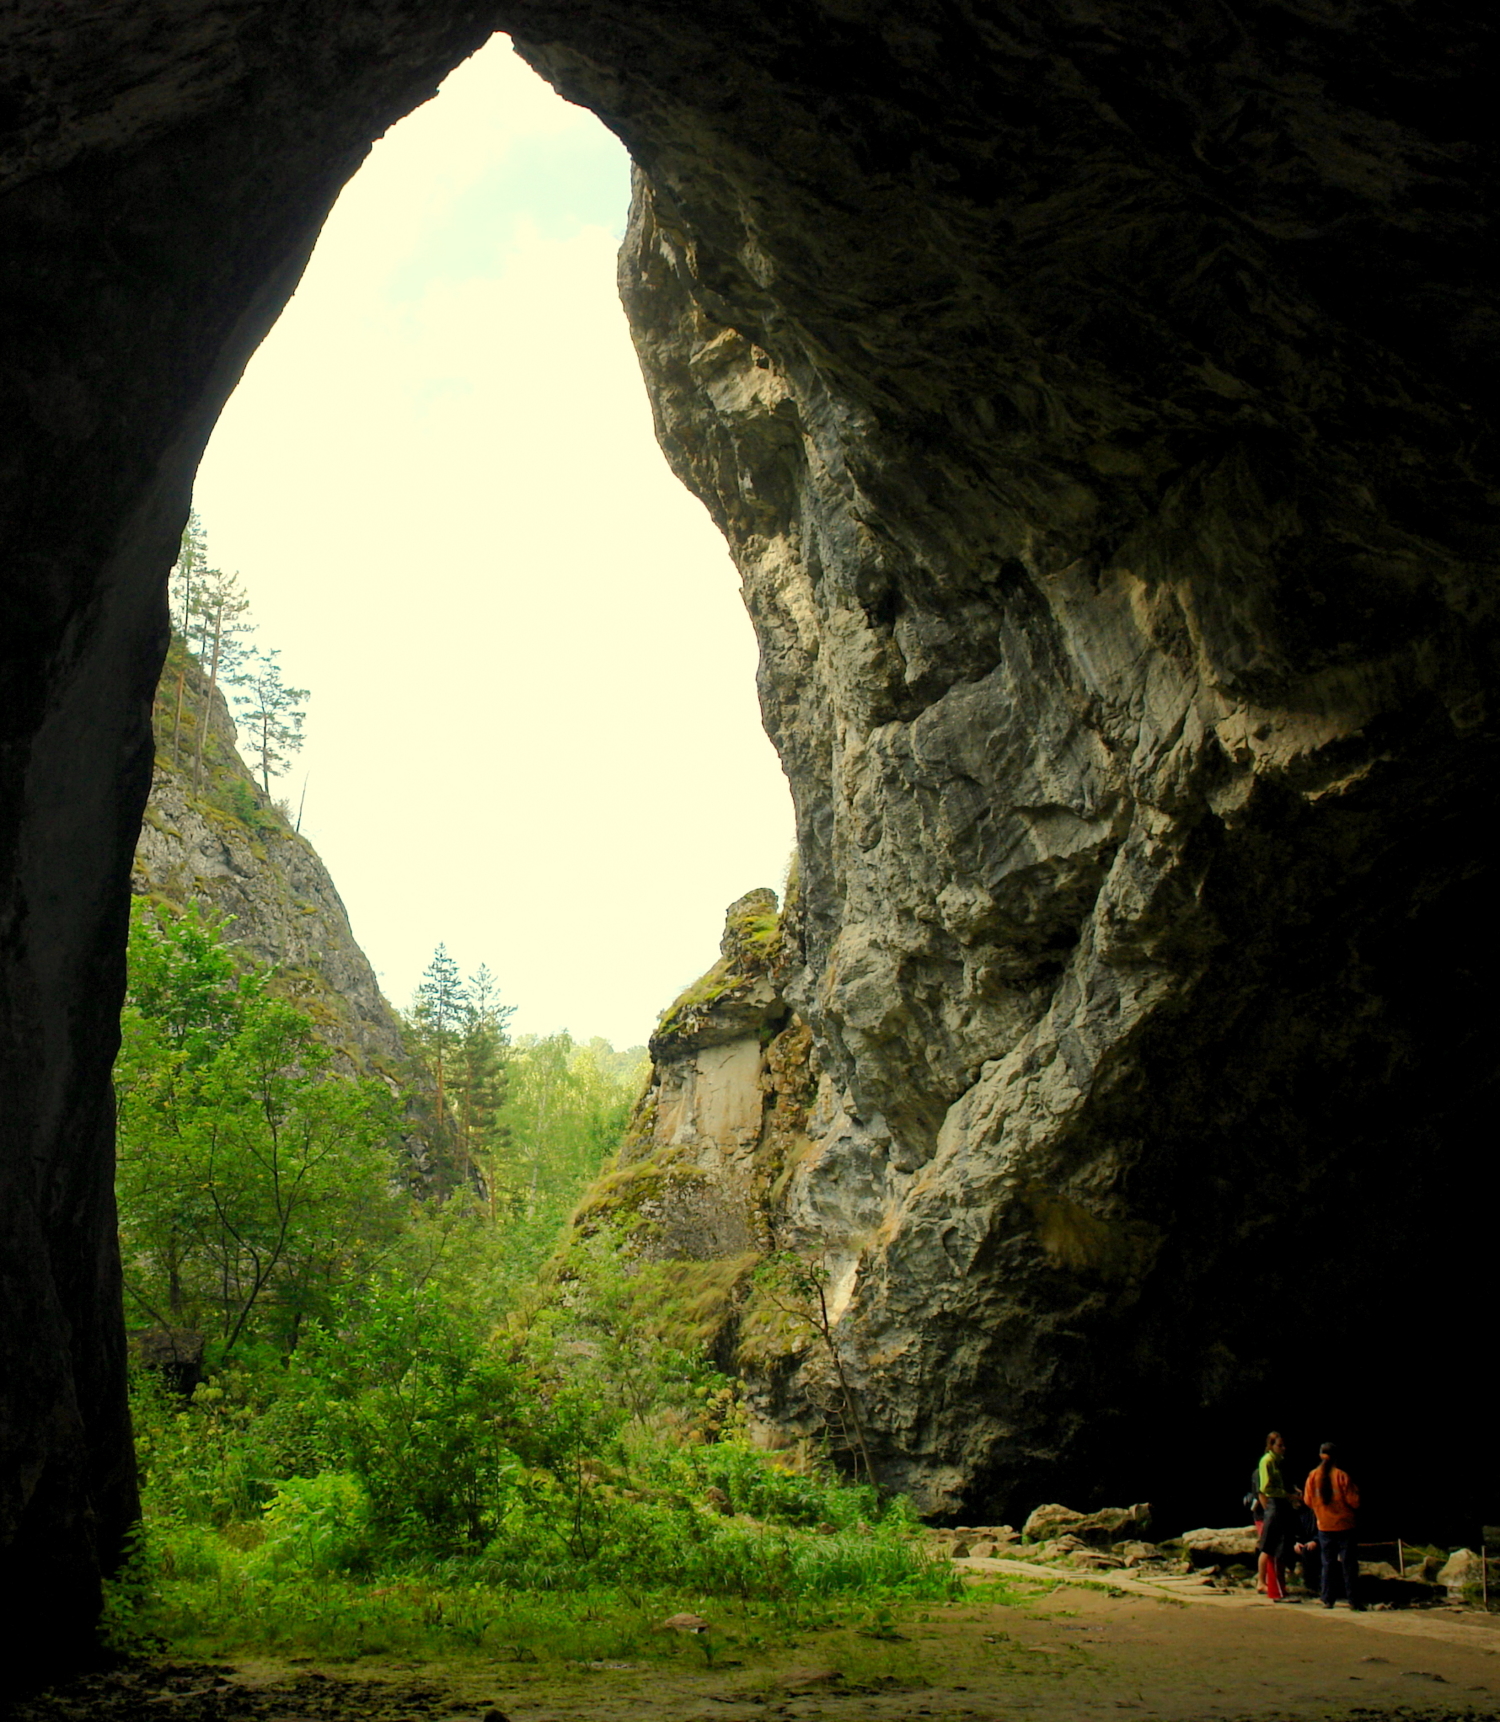 Из пещеры